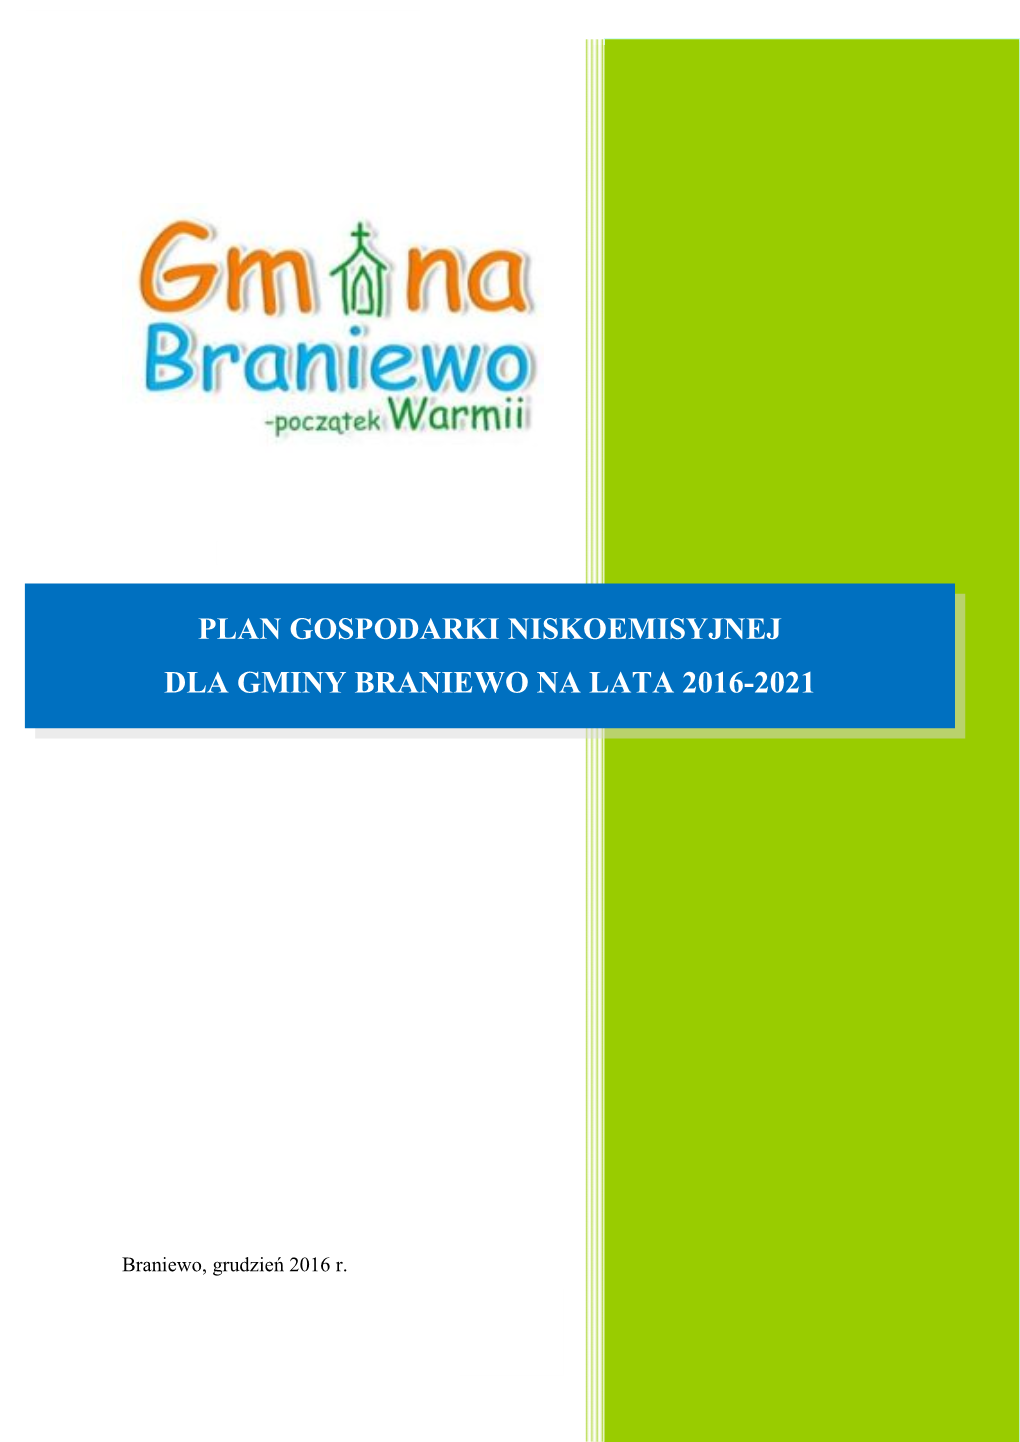 Plan Gospodarki Niskoemisyjnej Dla Gminy Braniewo (Dalej Zwanym PGN) Jest Dokumentem O Charakterze Strategicznym